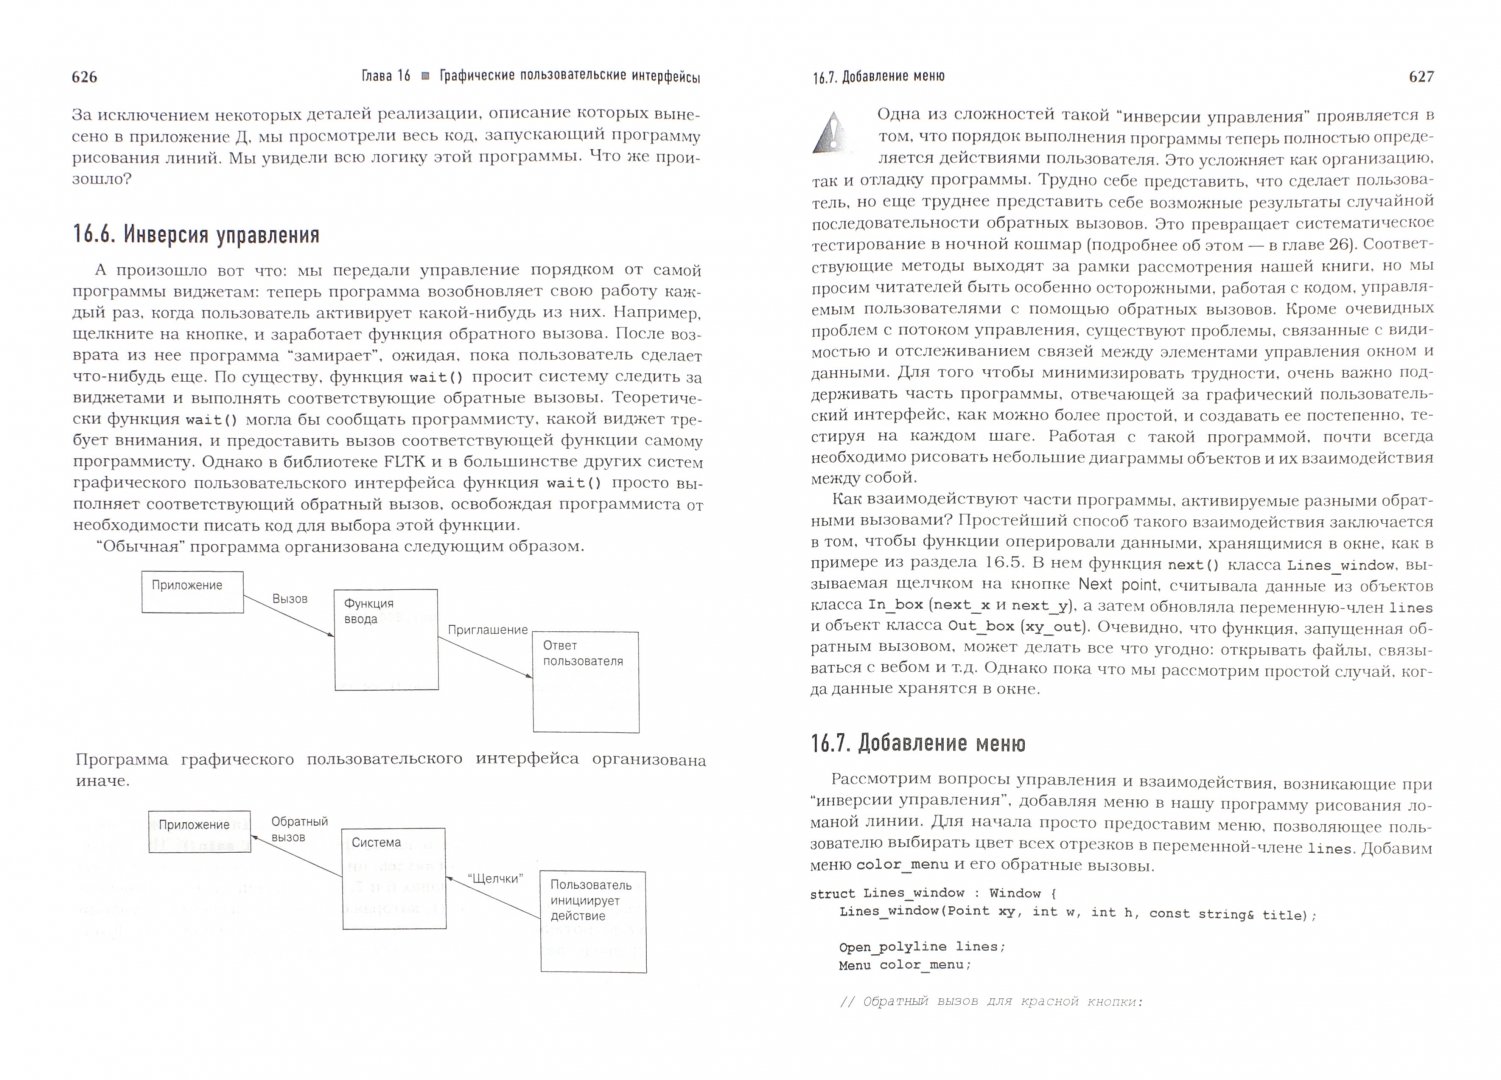 Иллюстрация 1 из 11 для Программирование. Принципы и практика с использованием C++ - Бьярне Страуструп | Лабиринт - книги. Источник: Лабиринт